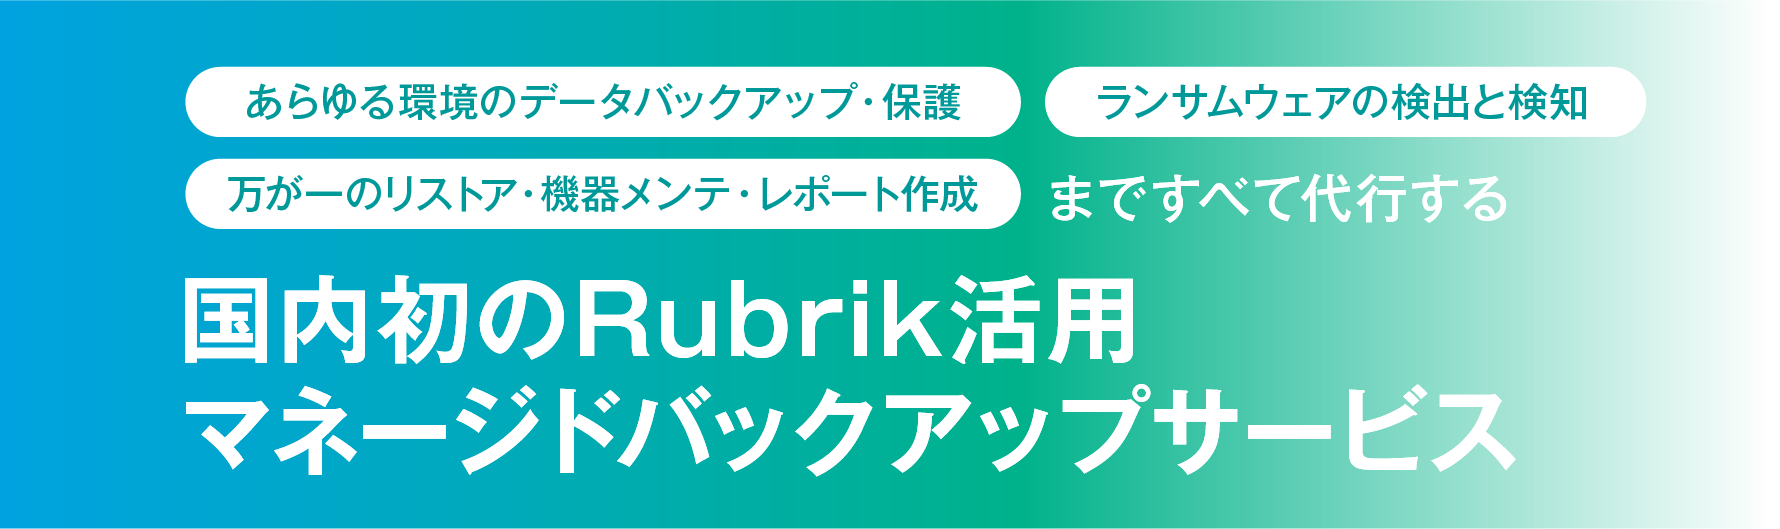 国内初のRubrik活用マネージドバックアップサービス